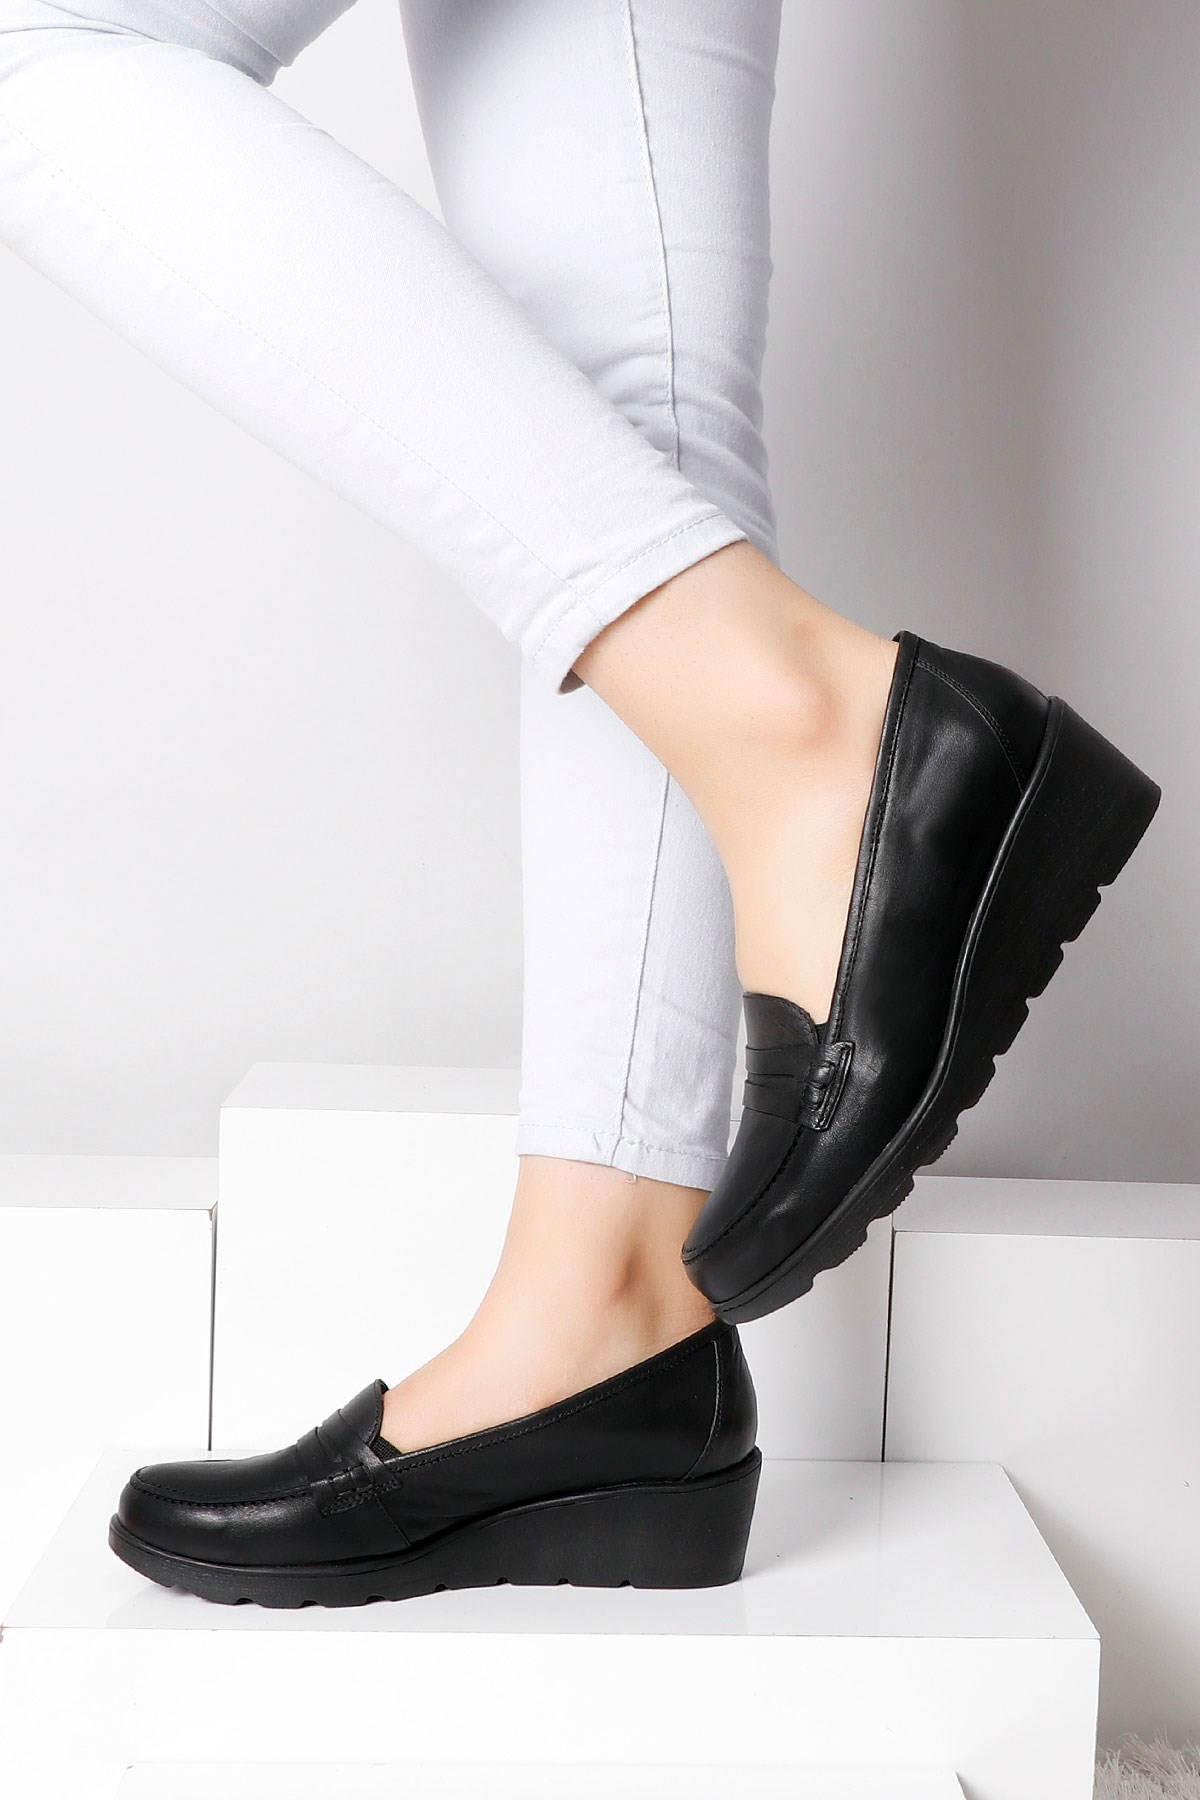 Siyah Hakiki Deri Dolgu Topuk Kadın Ayakkabı 4067 Fiyatı ve Modelleri